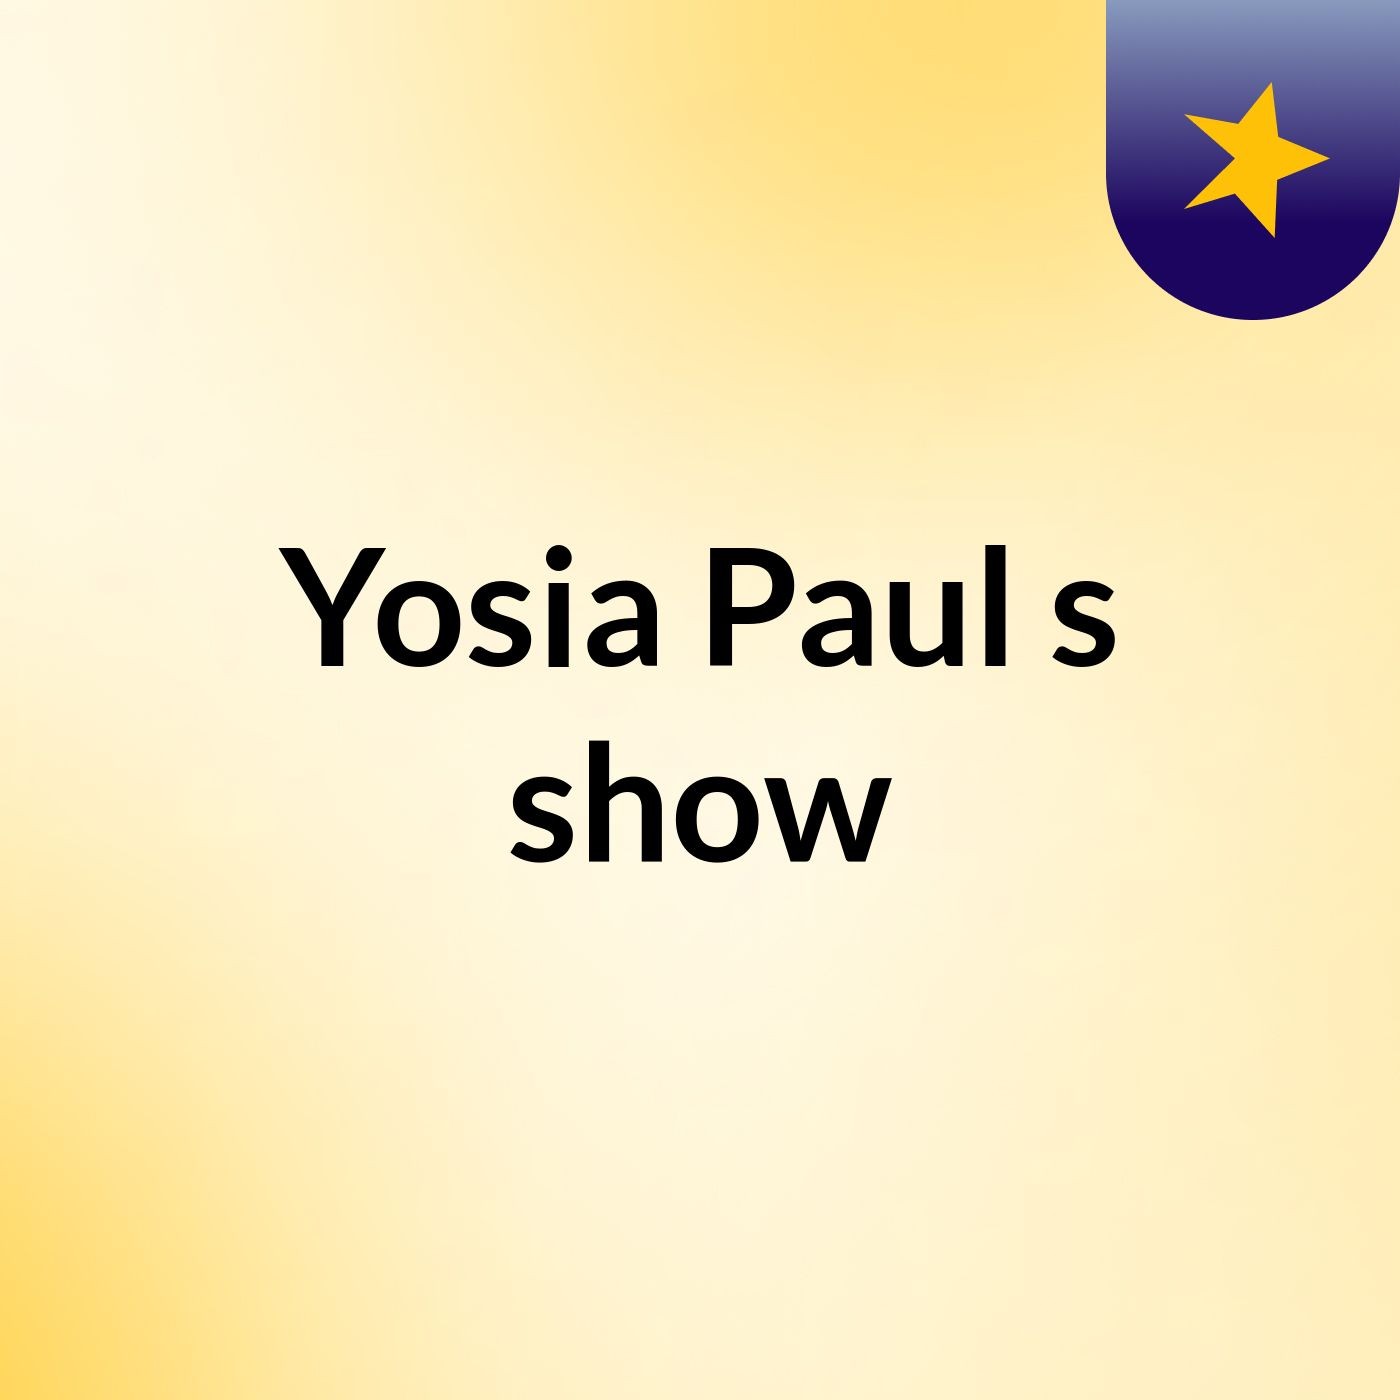 Yosia Paul's show